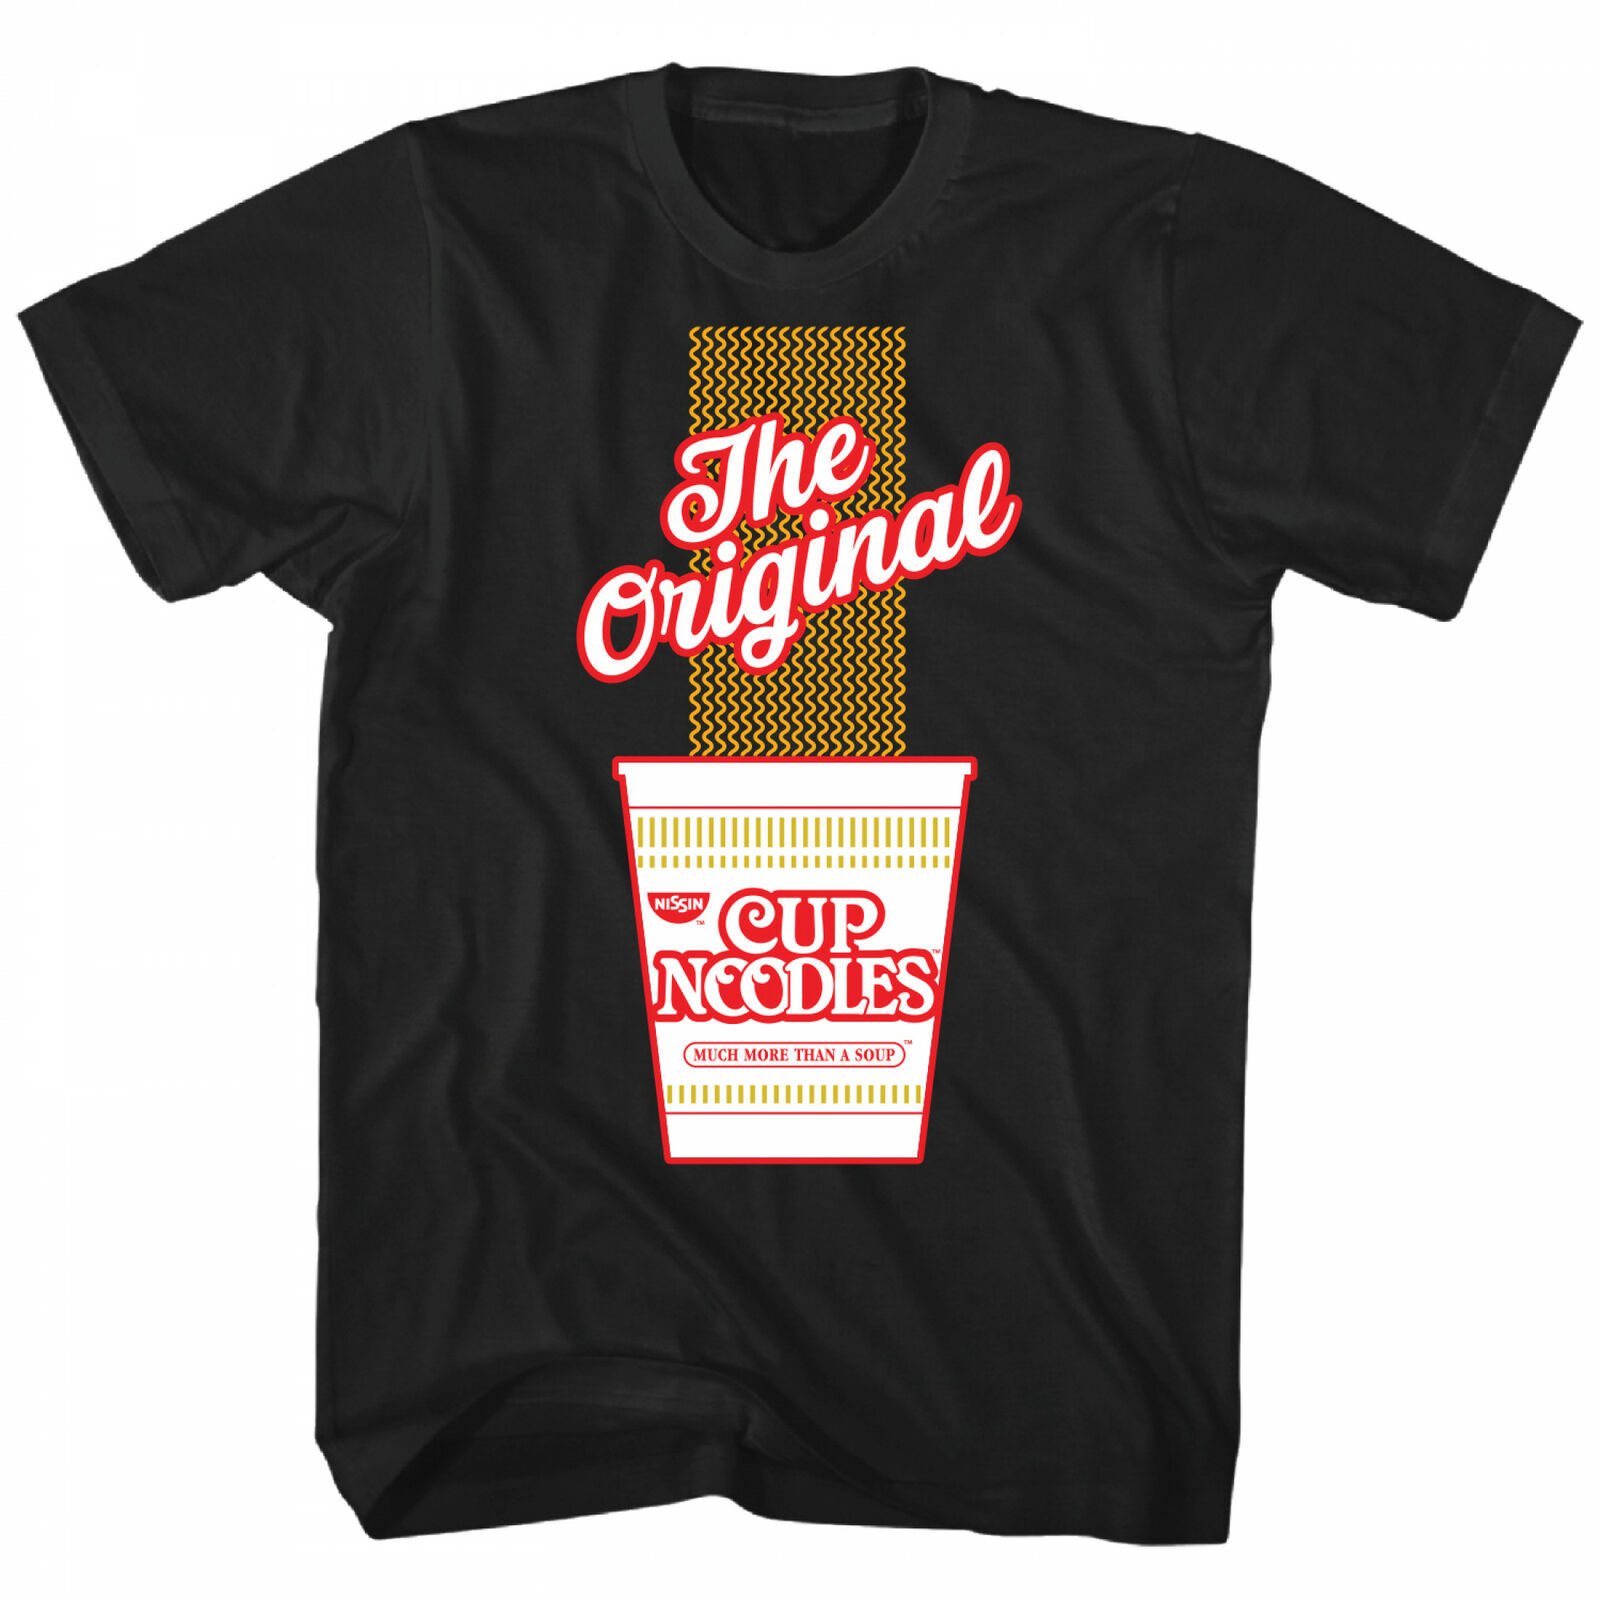 Noodles t-Shirt. Cup Noodle t-Shirt. Send Noodles. Рубашка лапша